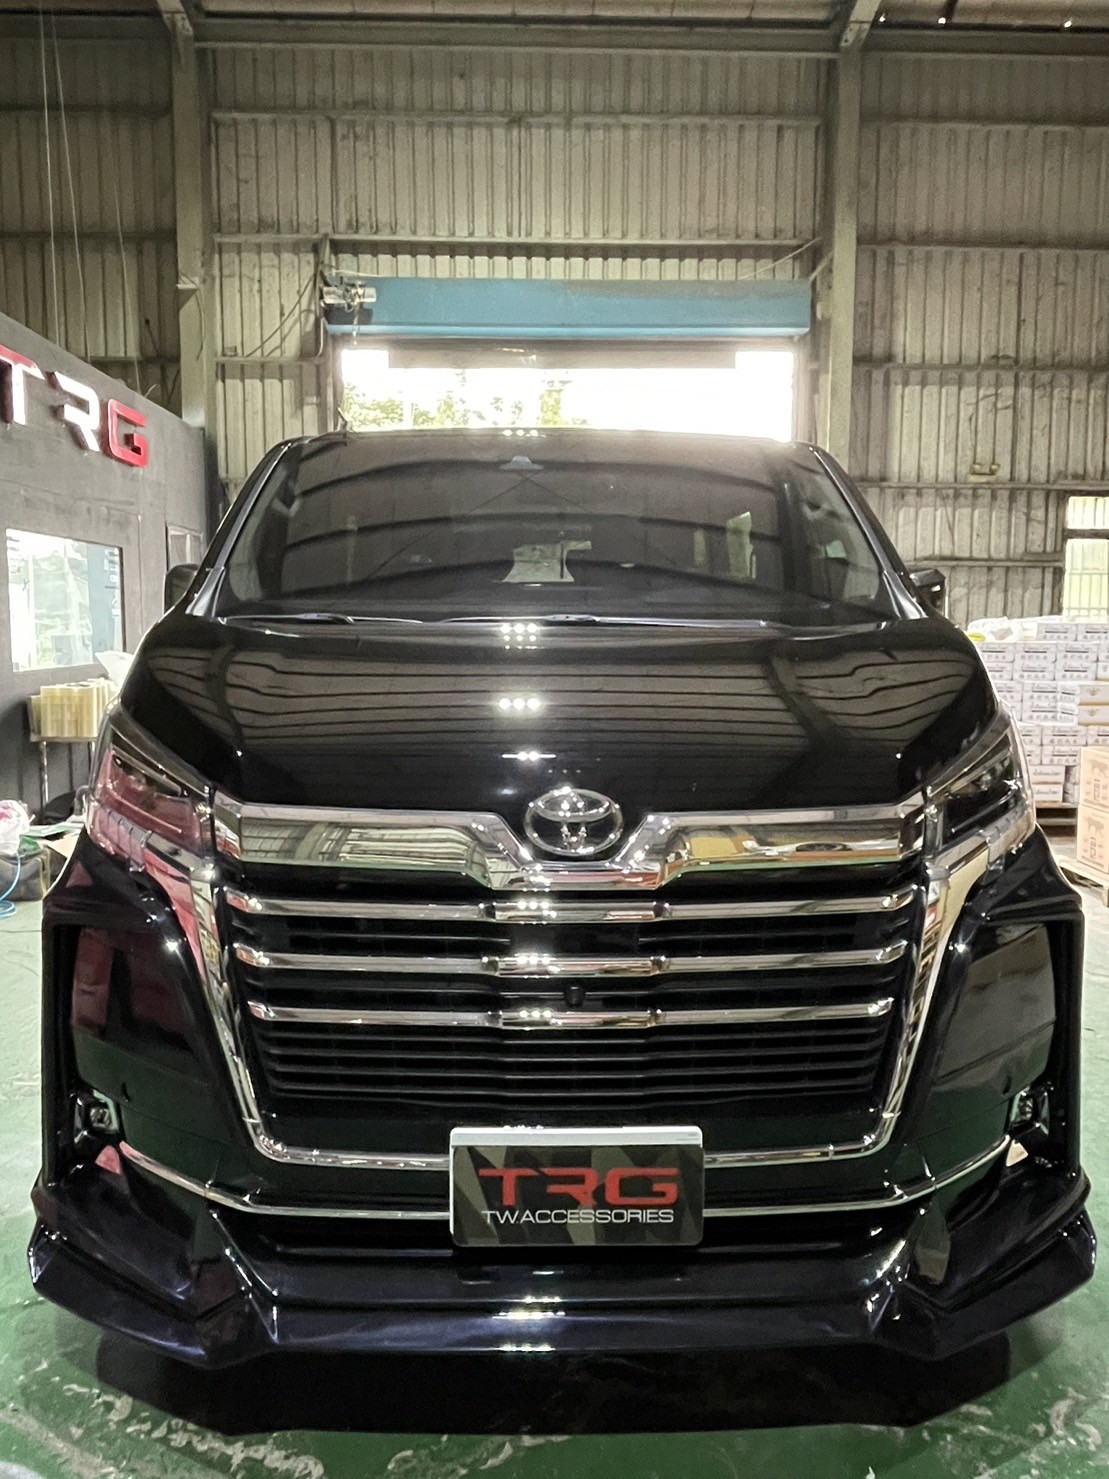 Amotriz Bodykit for Toyota Majesty 2019-2020 (COLOR)